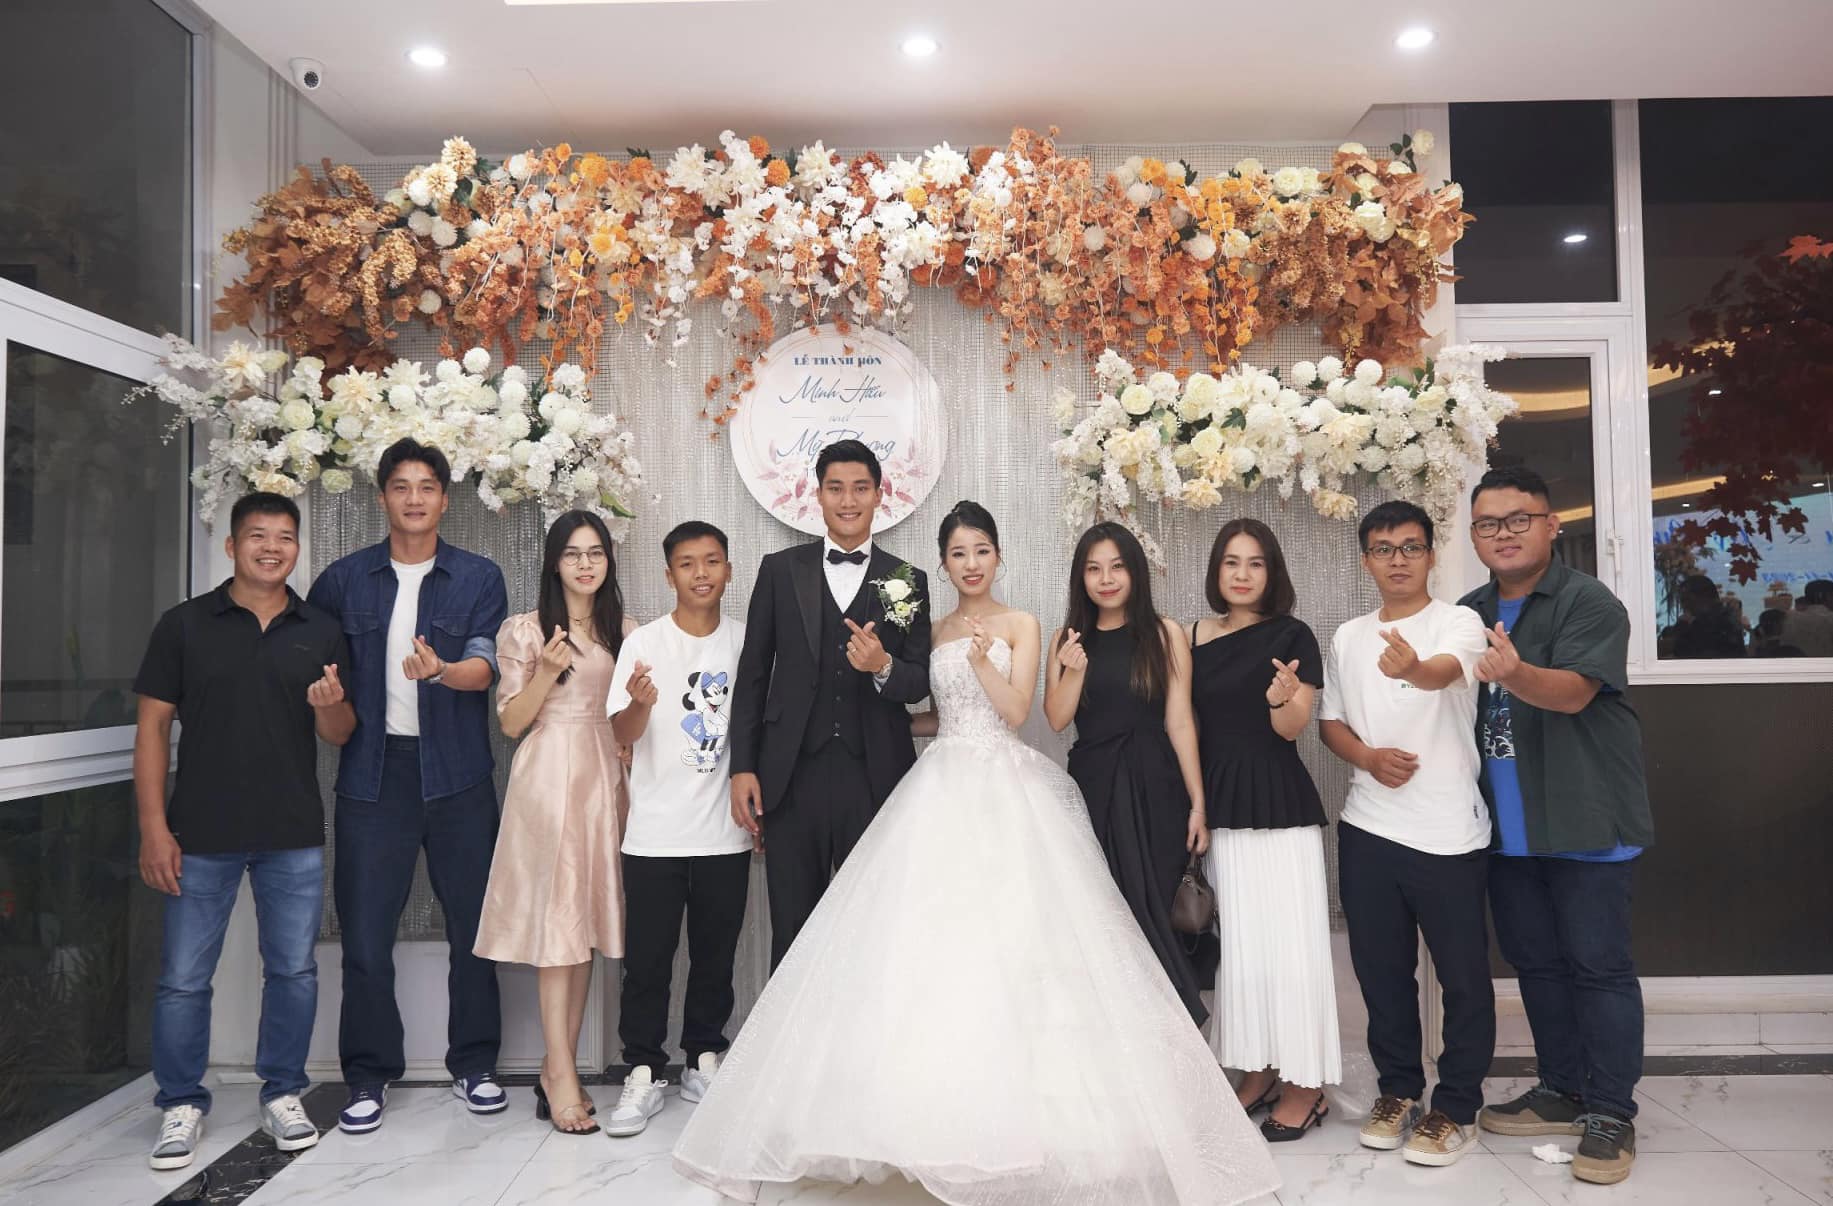 Cựu thủ môn U20 Việt Nam lấy vợ giáo viên, đám cưới không linh đình như Đoàn Văn Hậu nhưng trọn vẹn hạnh phúc- Ảnh 3.